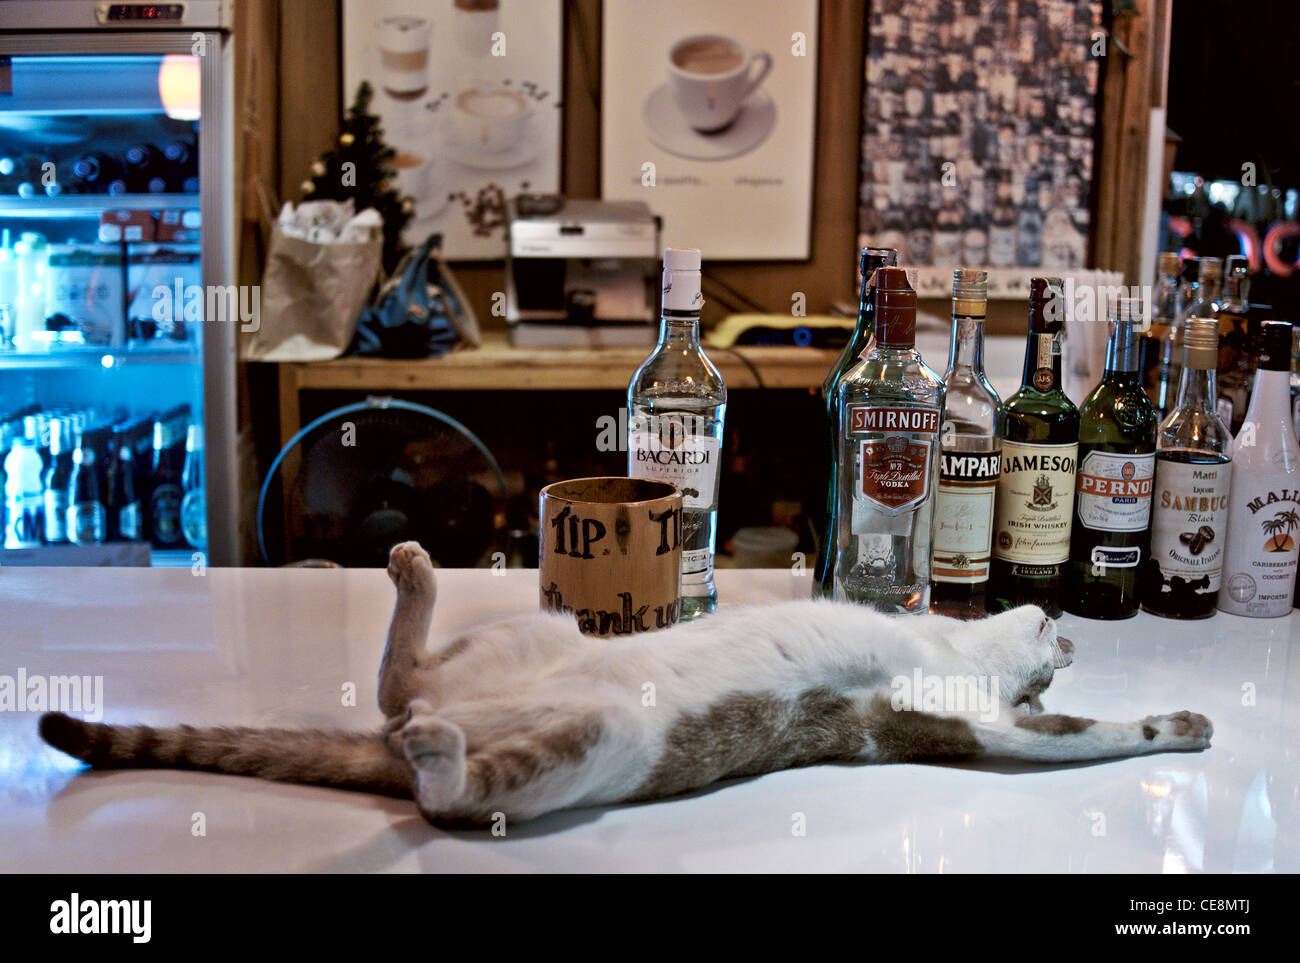 Animal drôle. Chat dormant dans un bar à bière apparemment ivre sous l'influence de l'alcool. Thaïlande Asie du Sud-est Banque D'Images